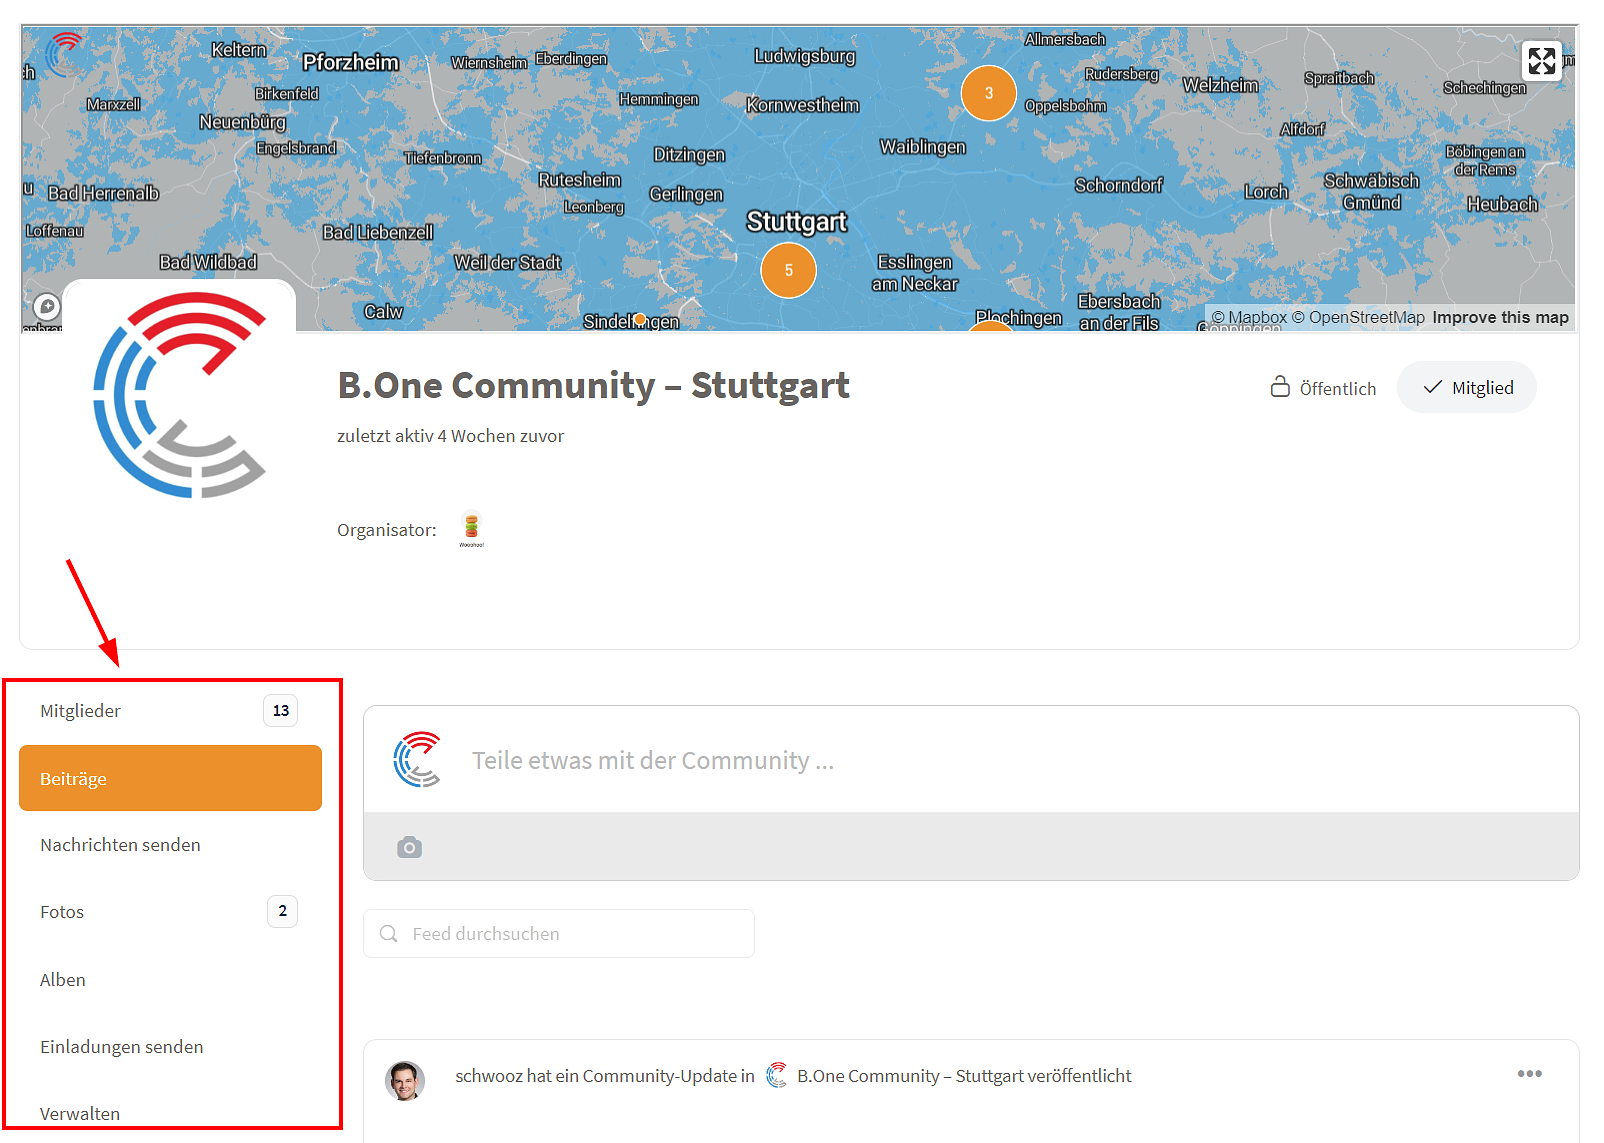 B.One Community: Grundstruktur einer Community am Beispiel Stuttgart